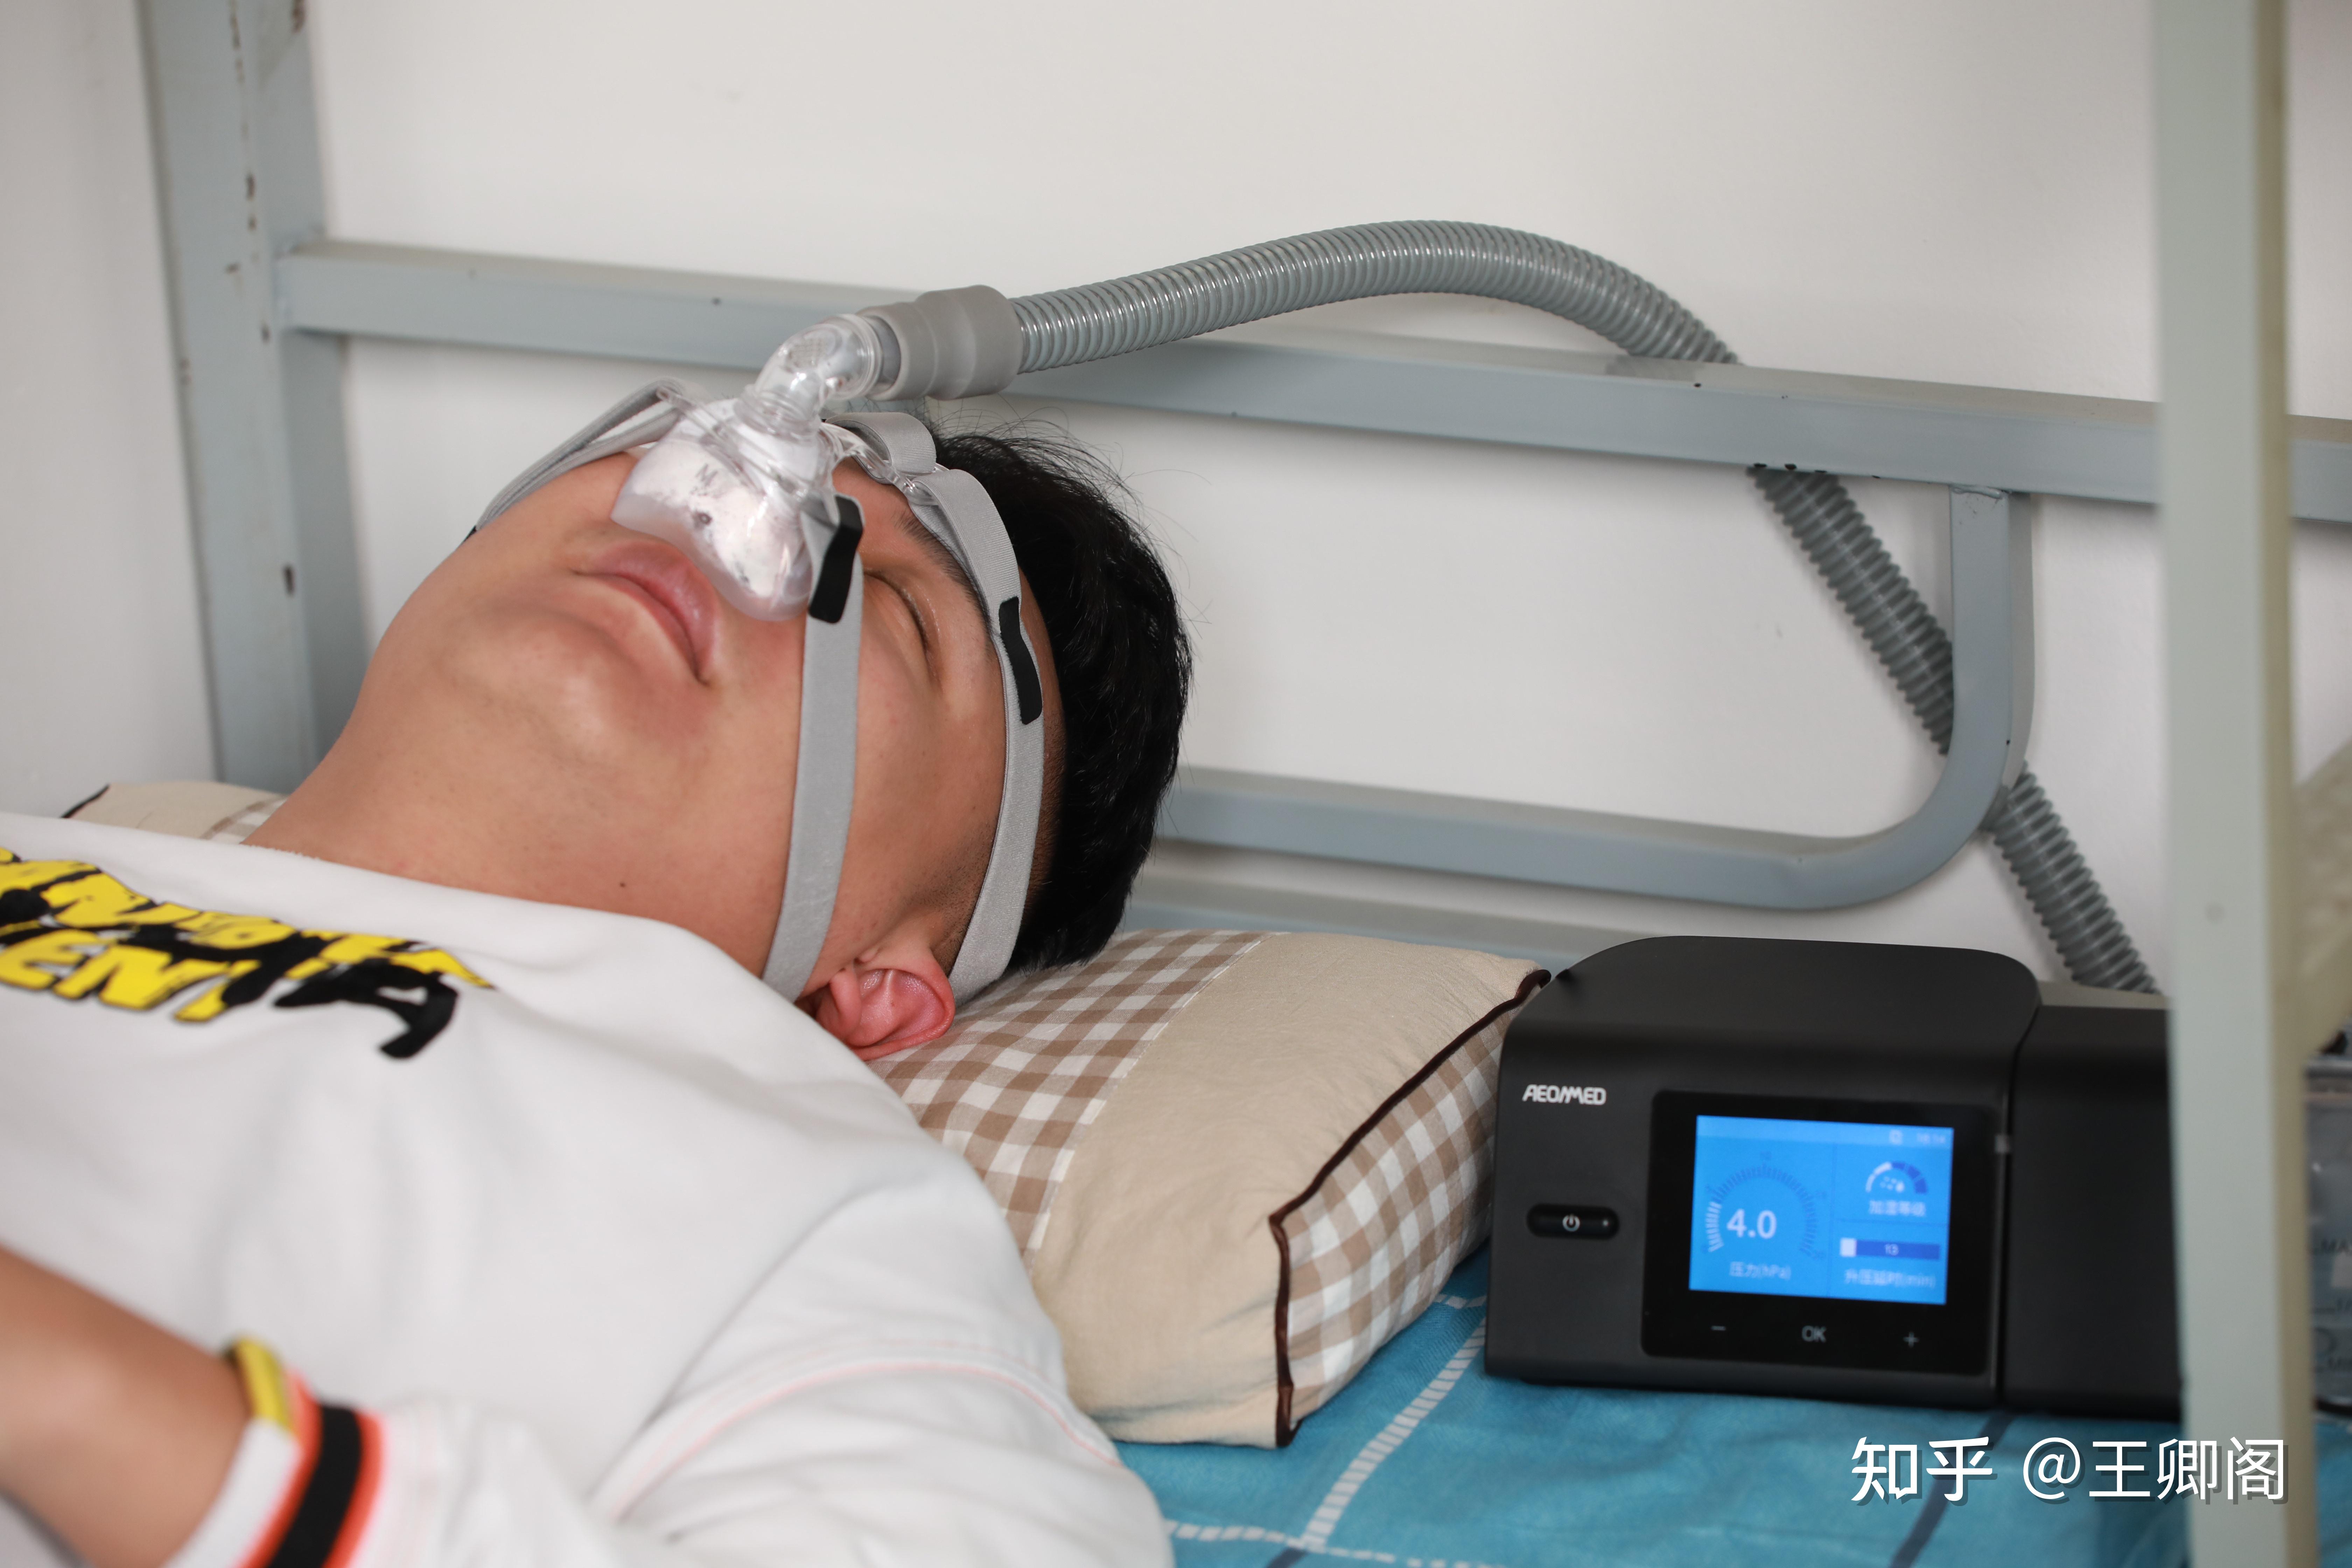 1,家用呼吸机是一种增加心肺通气量,改善呼吸功能的装置,使用家用呼吸